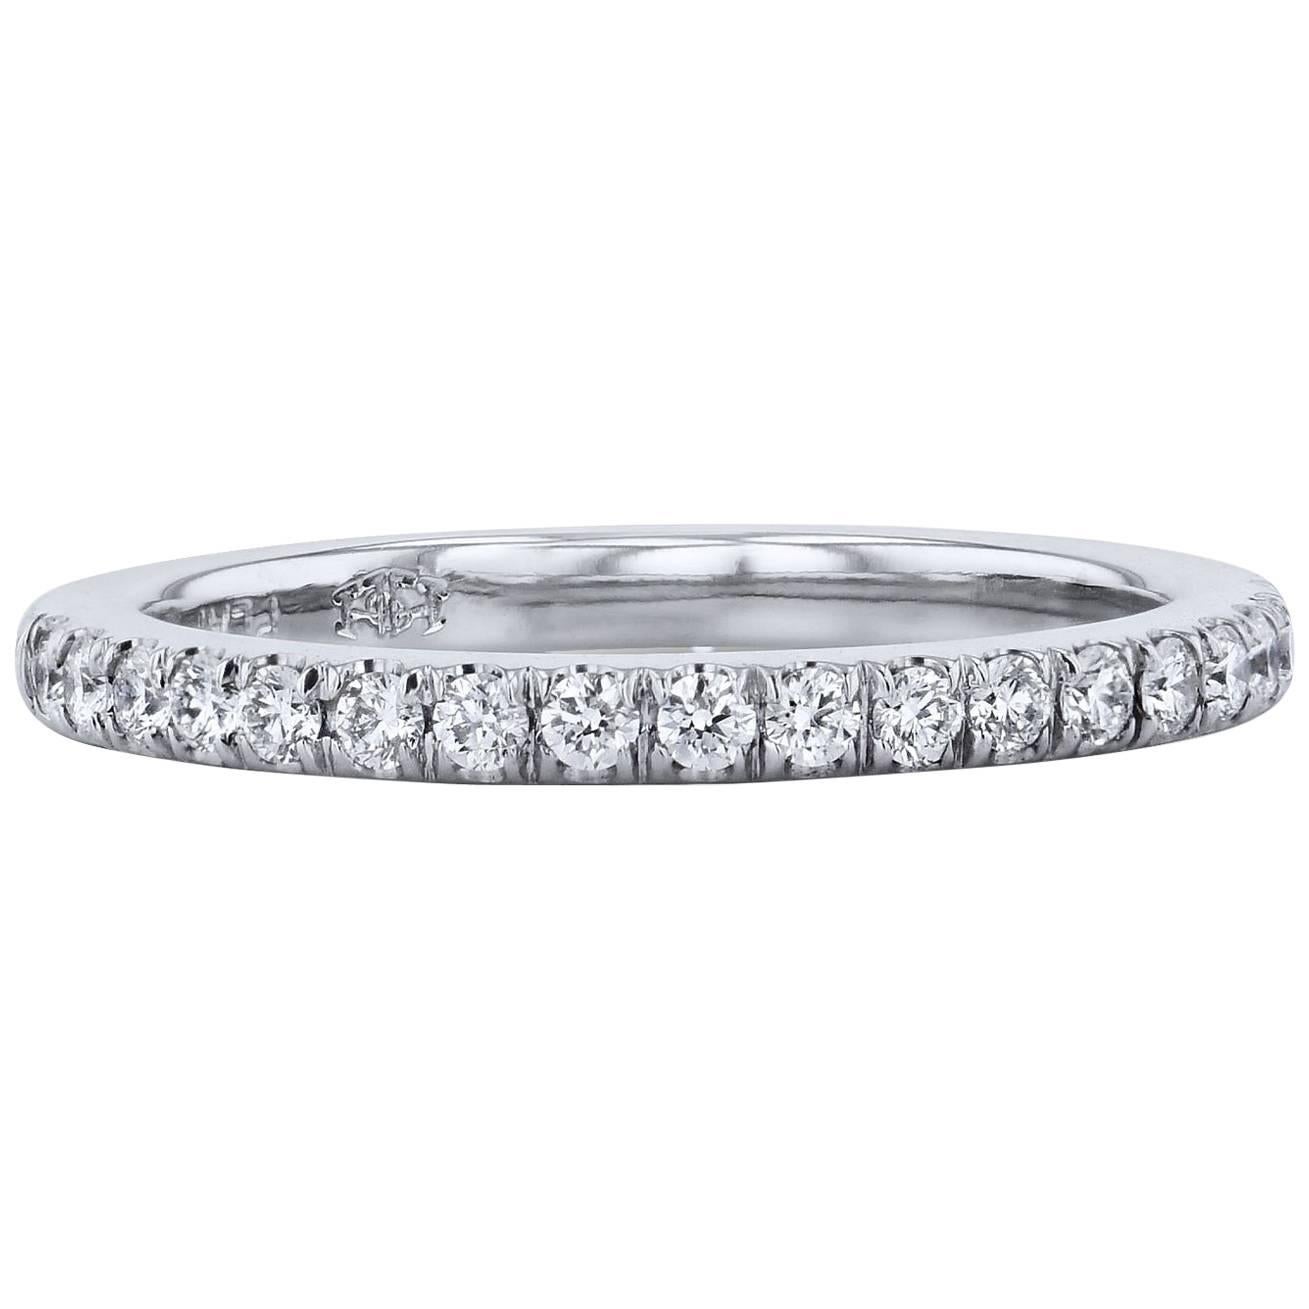 H & H 0.25 Carat Diamond Band Ring